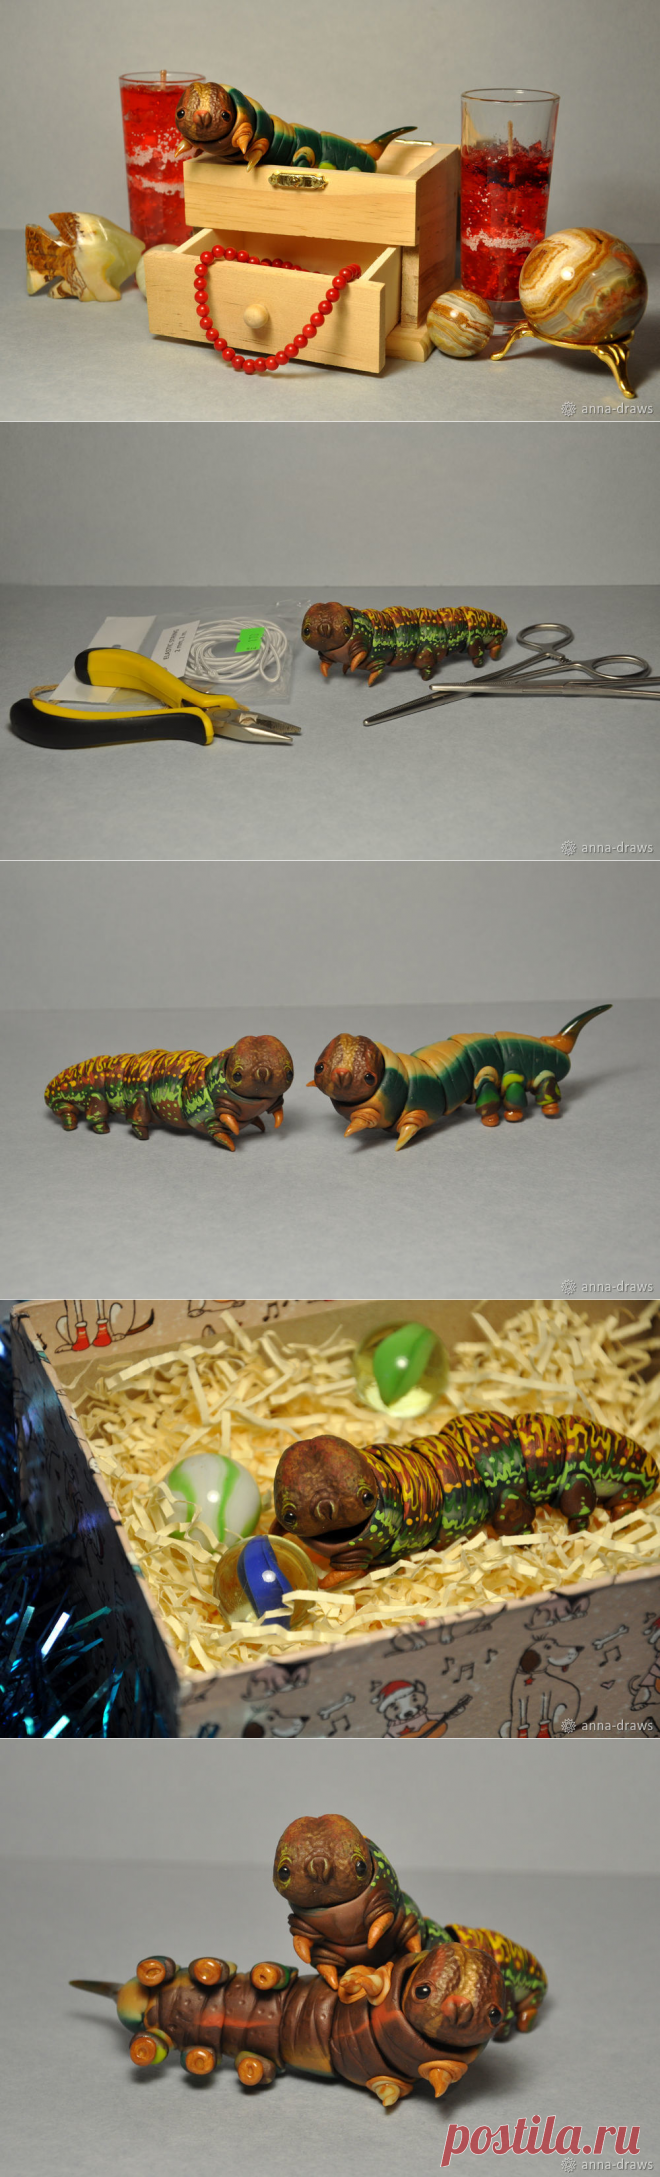 Процесс сборки простой шарнирной игрушки «Гусеничка» - Ярмарка Мастеров - ручная работа, handmade